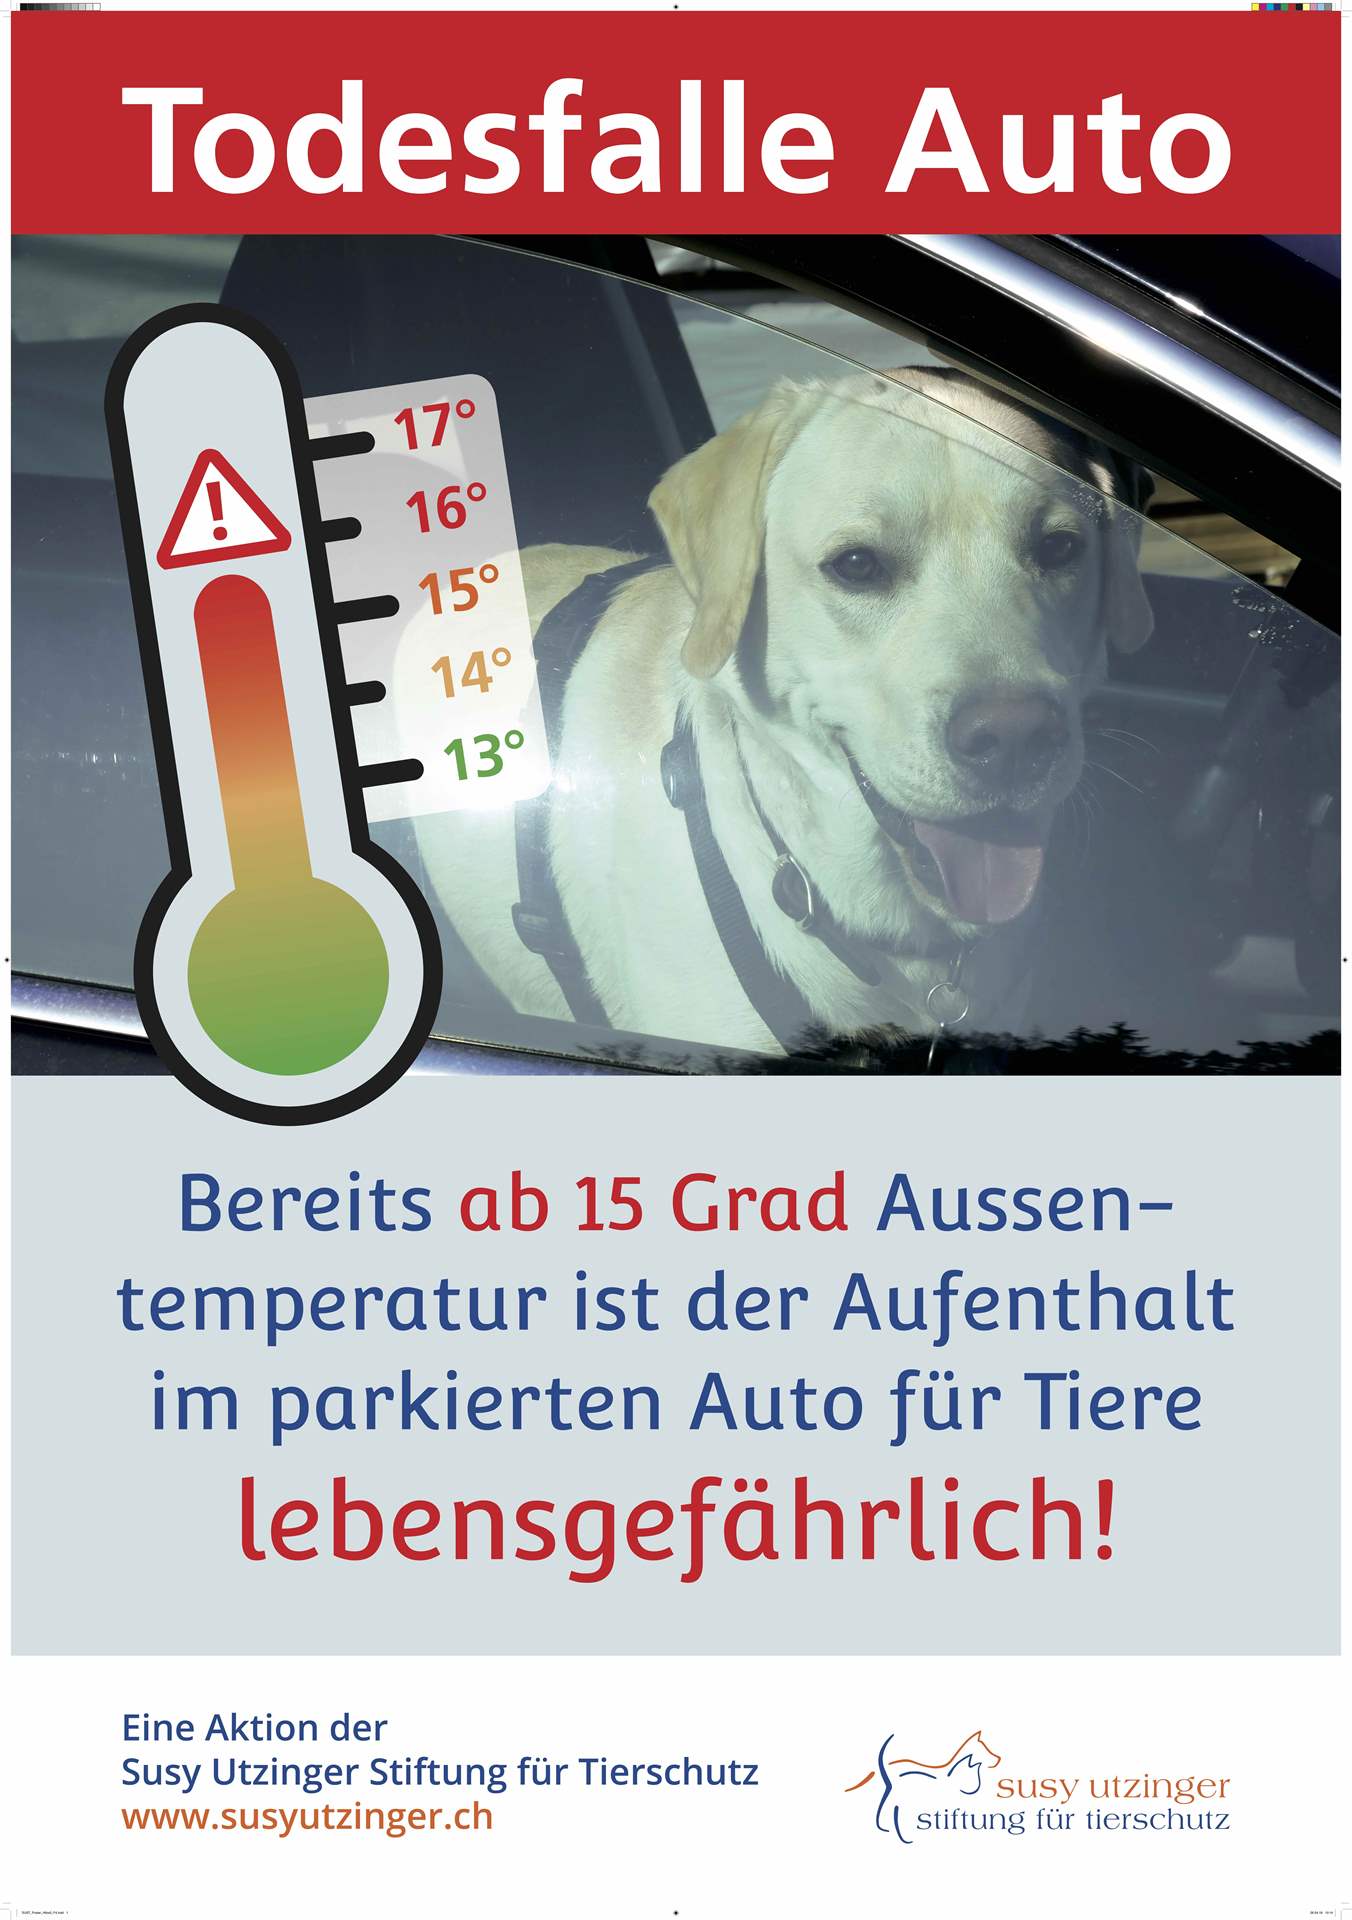 Todesfalle Auto – Ab 15 Grad Aussentemperatur wird es lebensgefährlich für Hunde in parkierten Autos